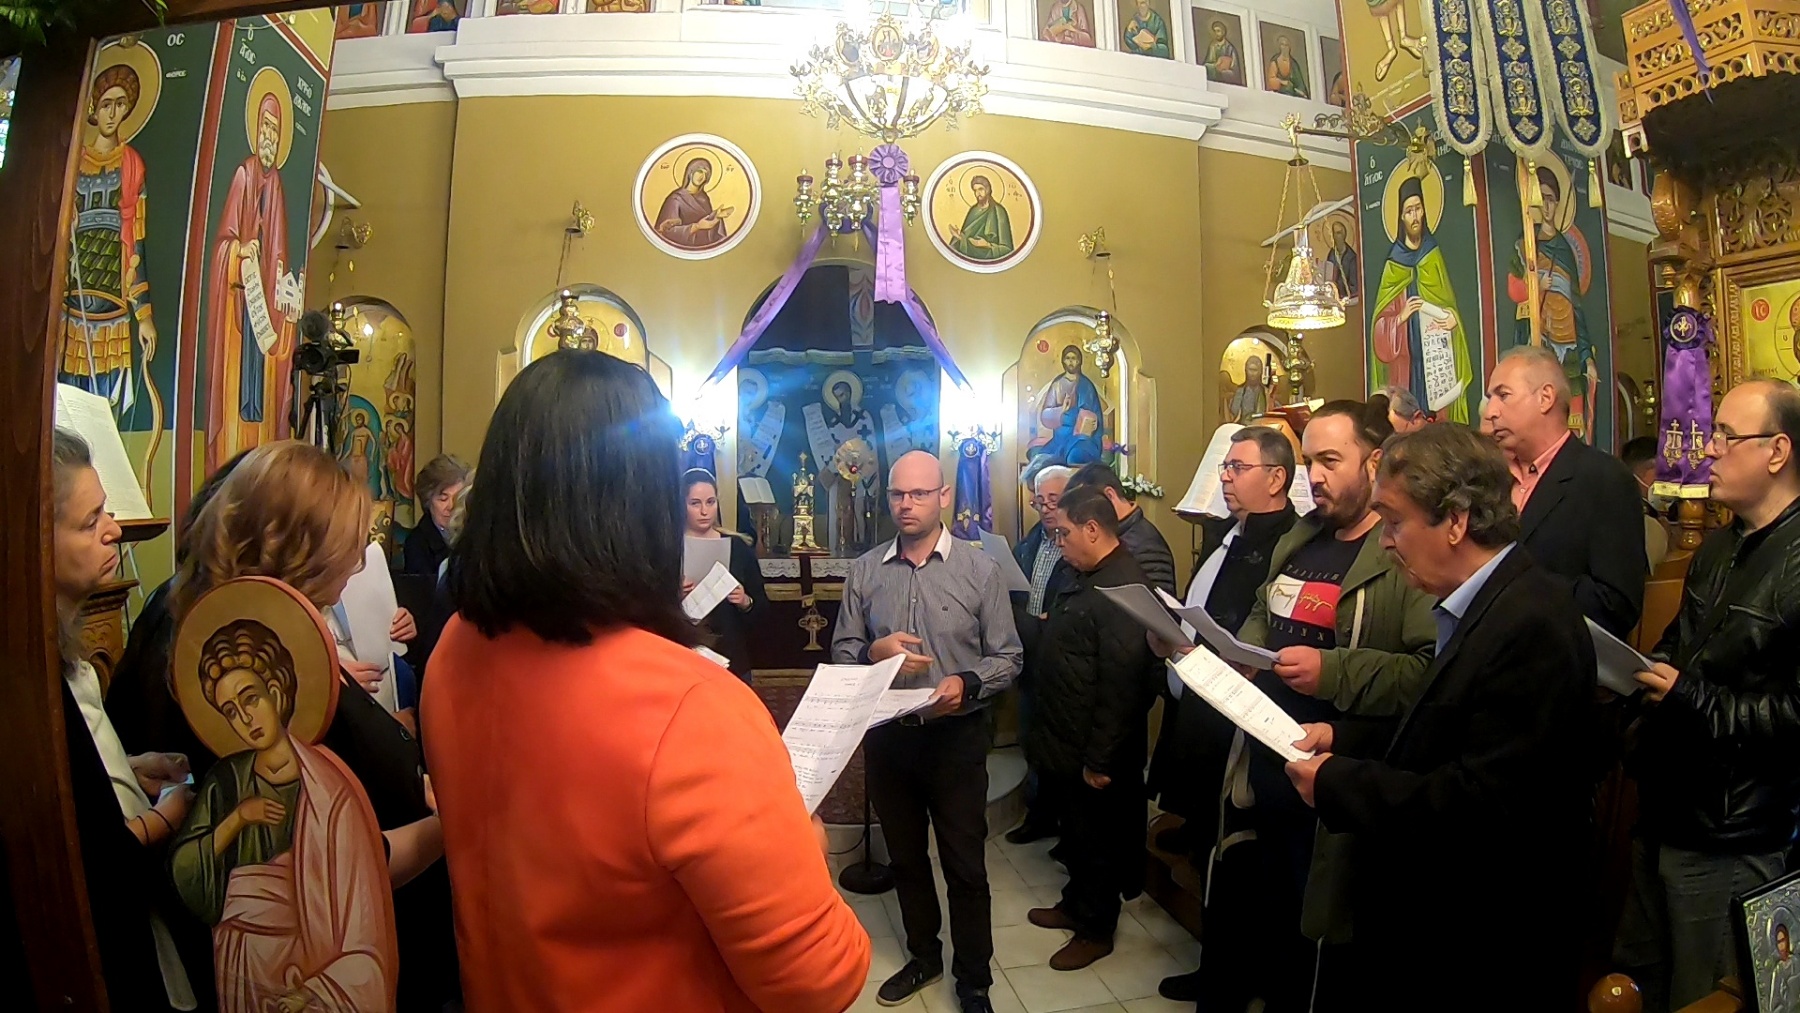 Η Μικτή Χορωδία του Πολιτιστικού Συλλόγου Τυρνάβου στον Άγιο Ιωάννη την Μεγάλη Παρασκευή